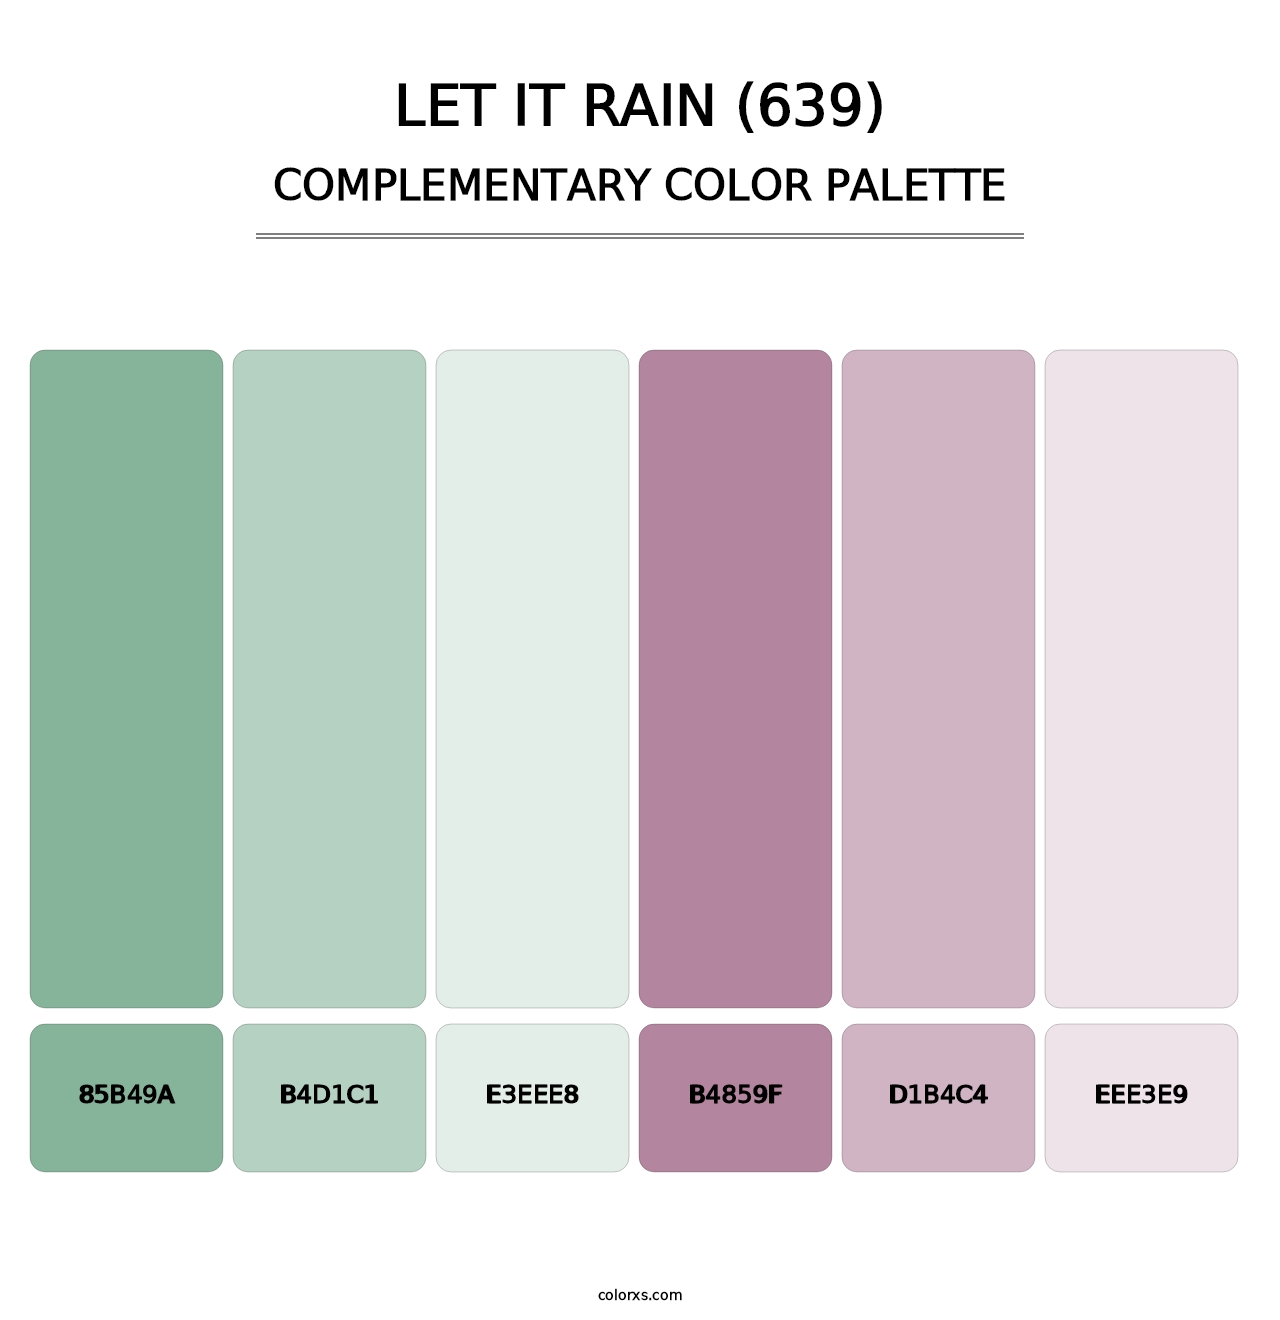 Let It Rain (639) - Complementary Color Palette